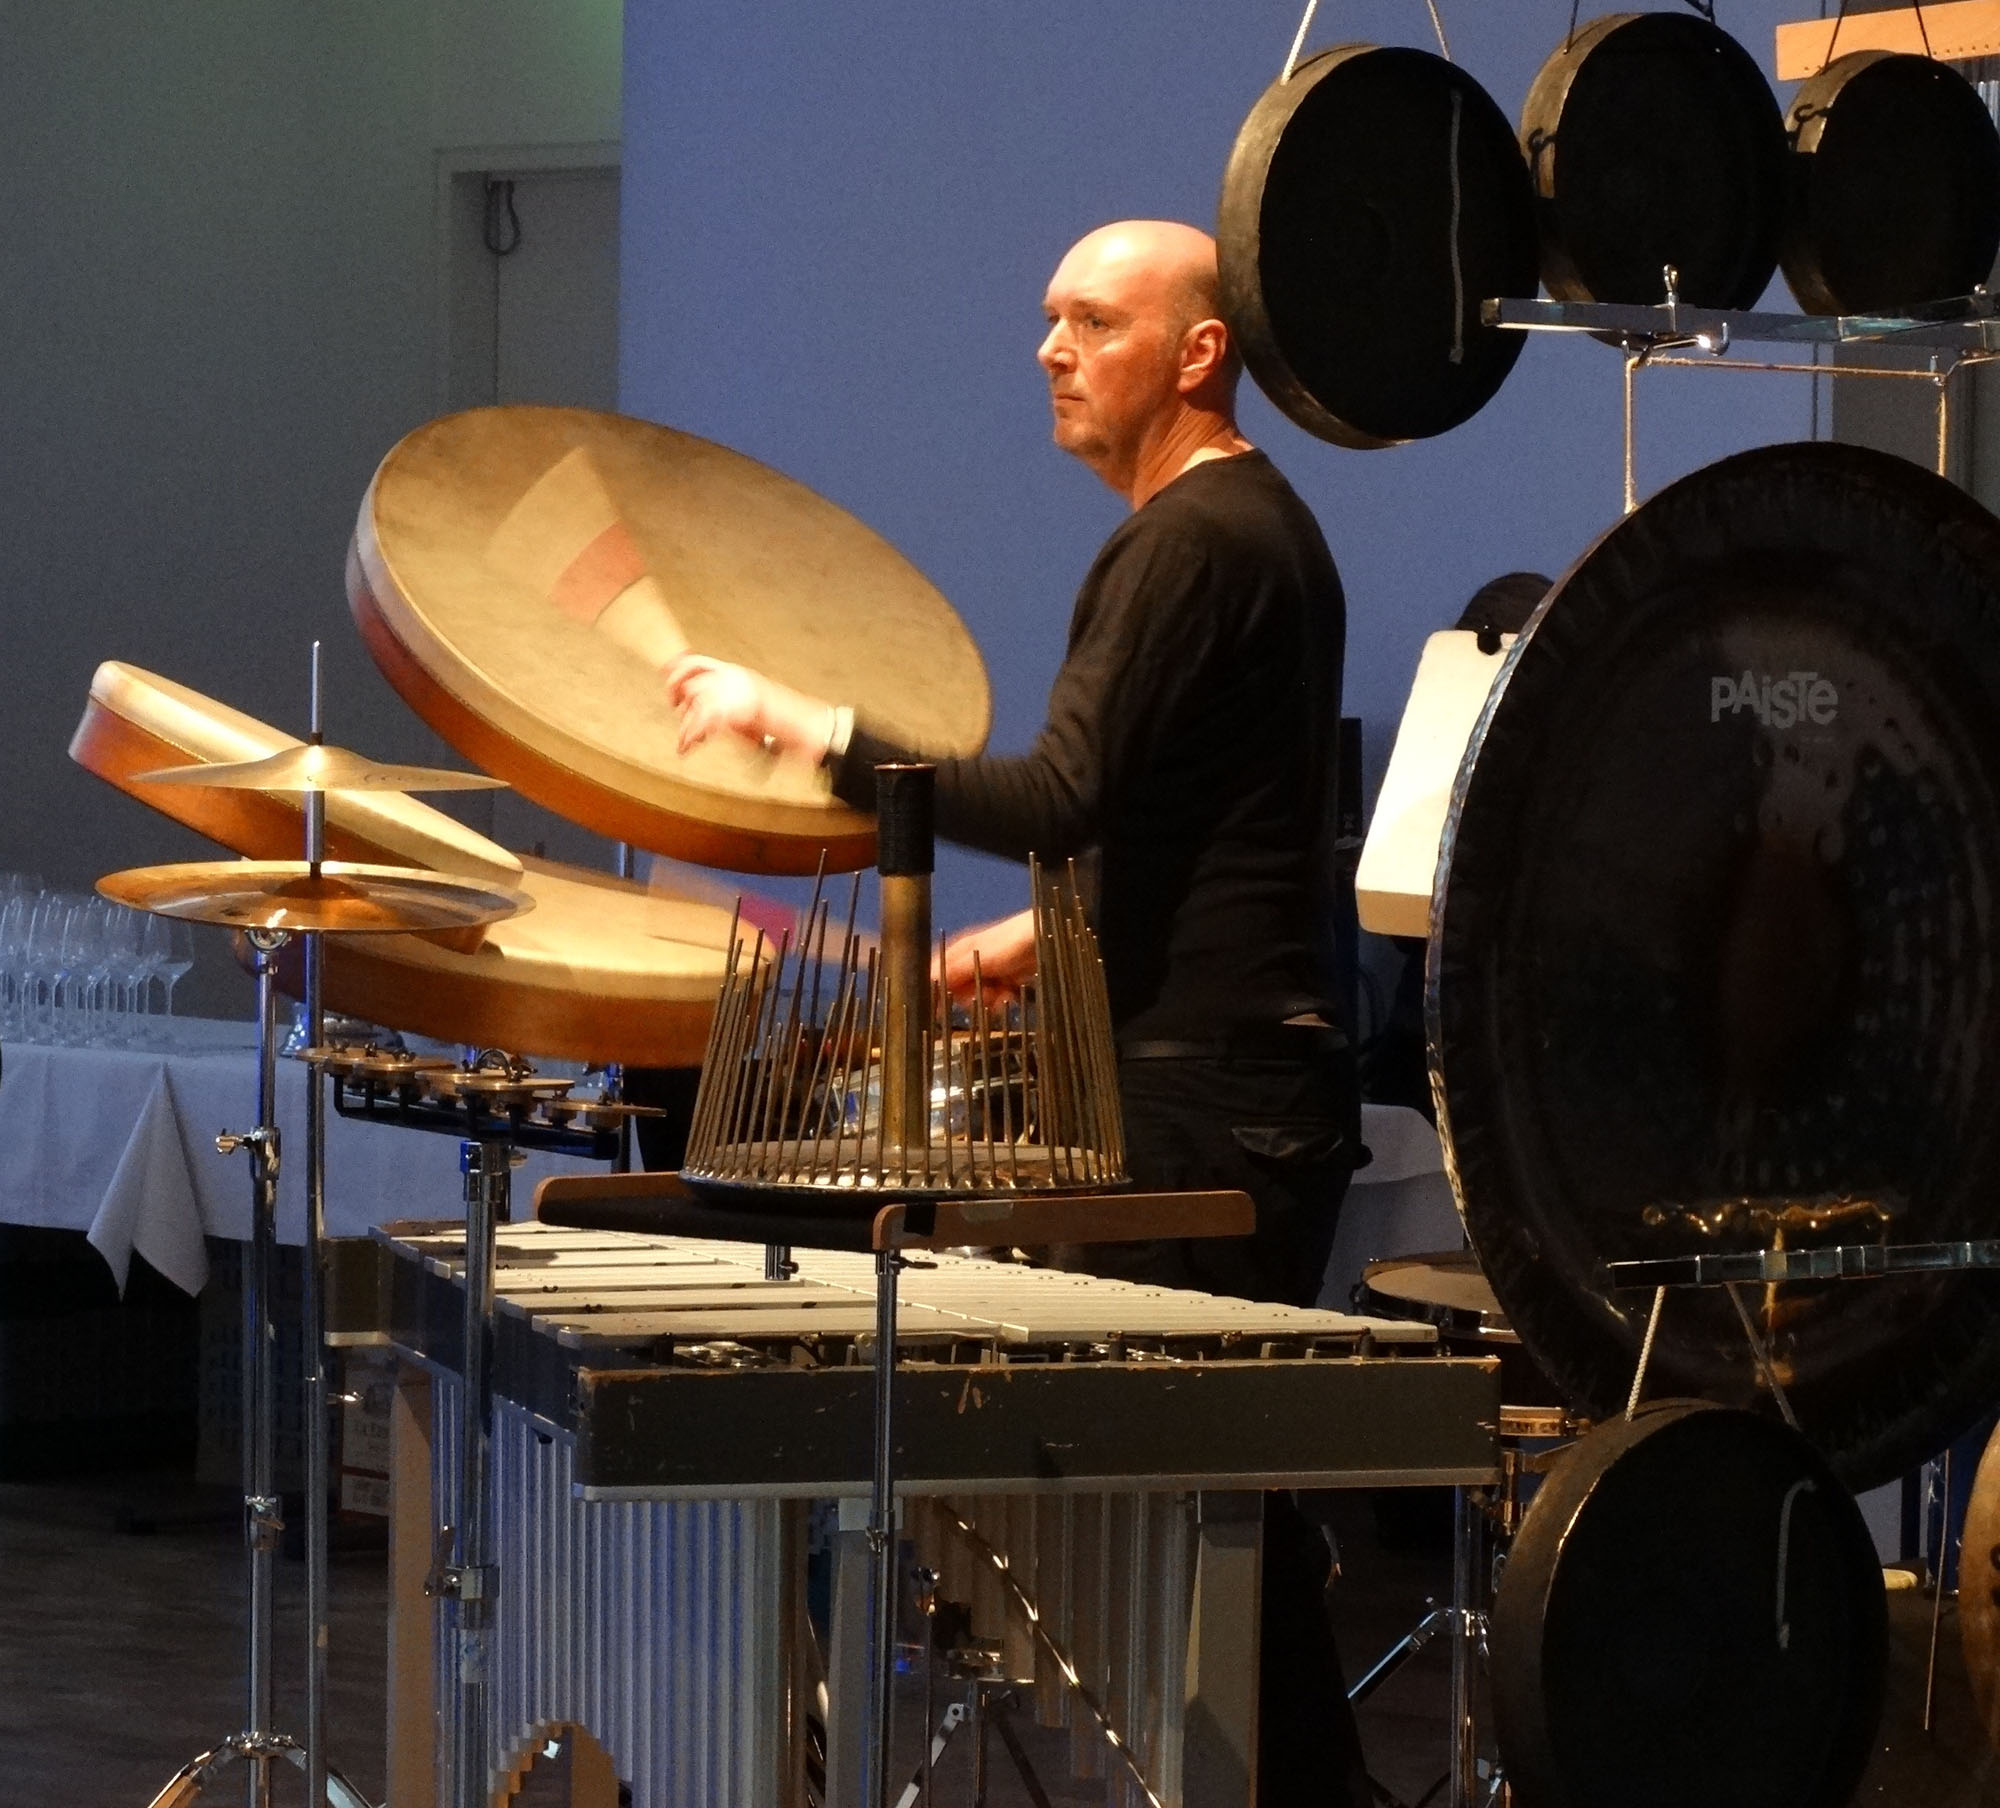 SPACES 2014. Festivalleiter Jürgen Grözinger am Schlagzeug